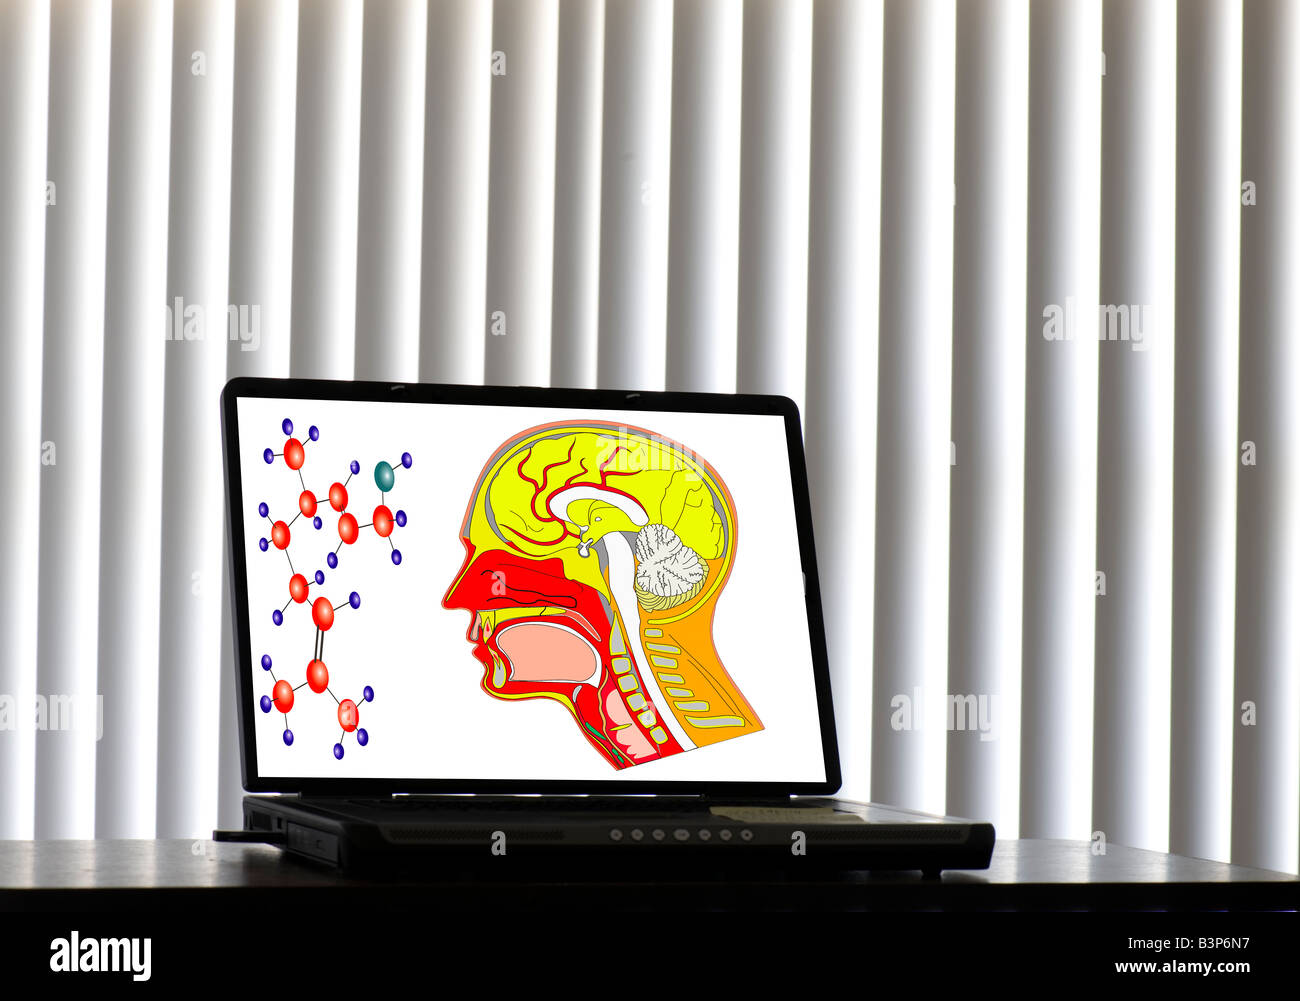 Image générée par ordinateur de la tête humaine et scientifique des symboles sur l'écran du portable Banque D'Images